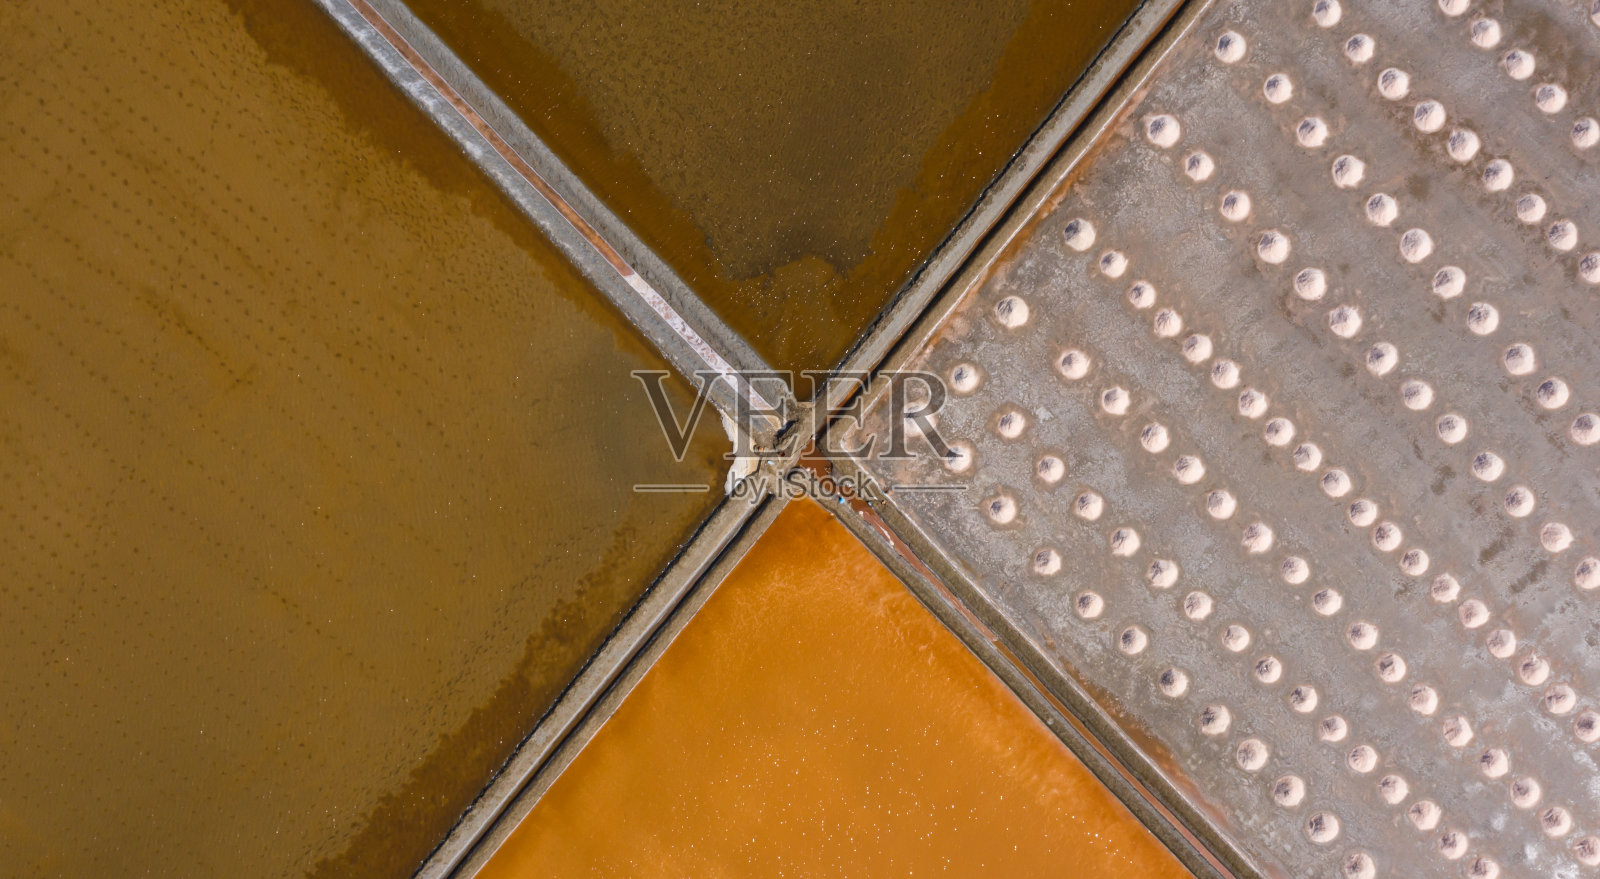 泰国碧碧府的盐业生产照片摄影图片